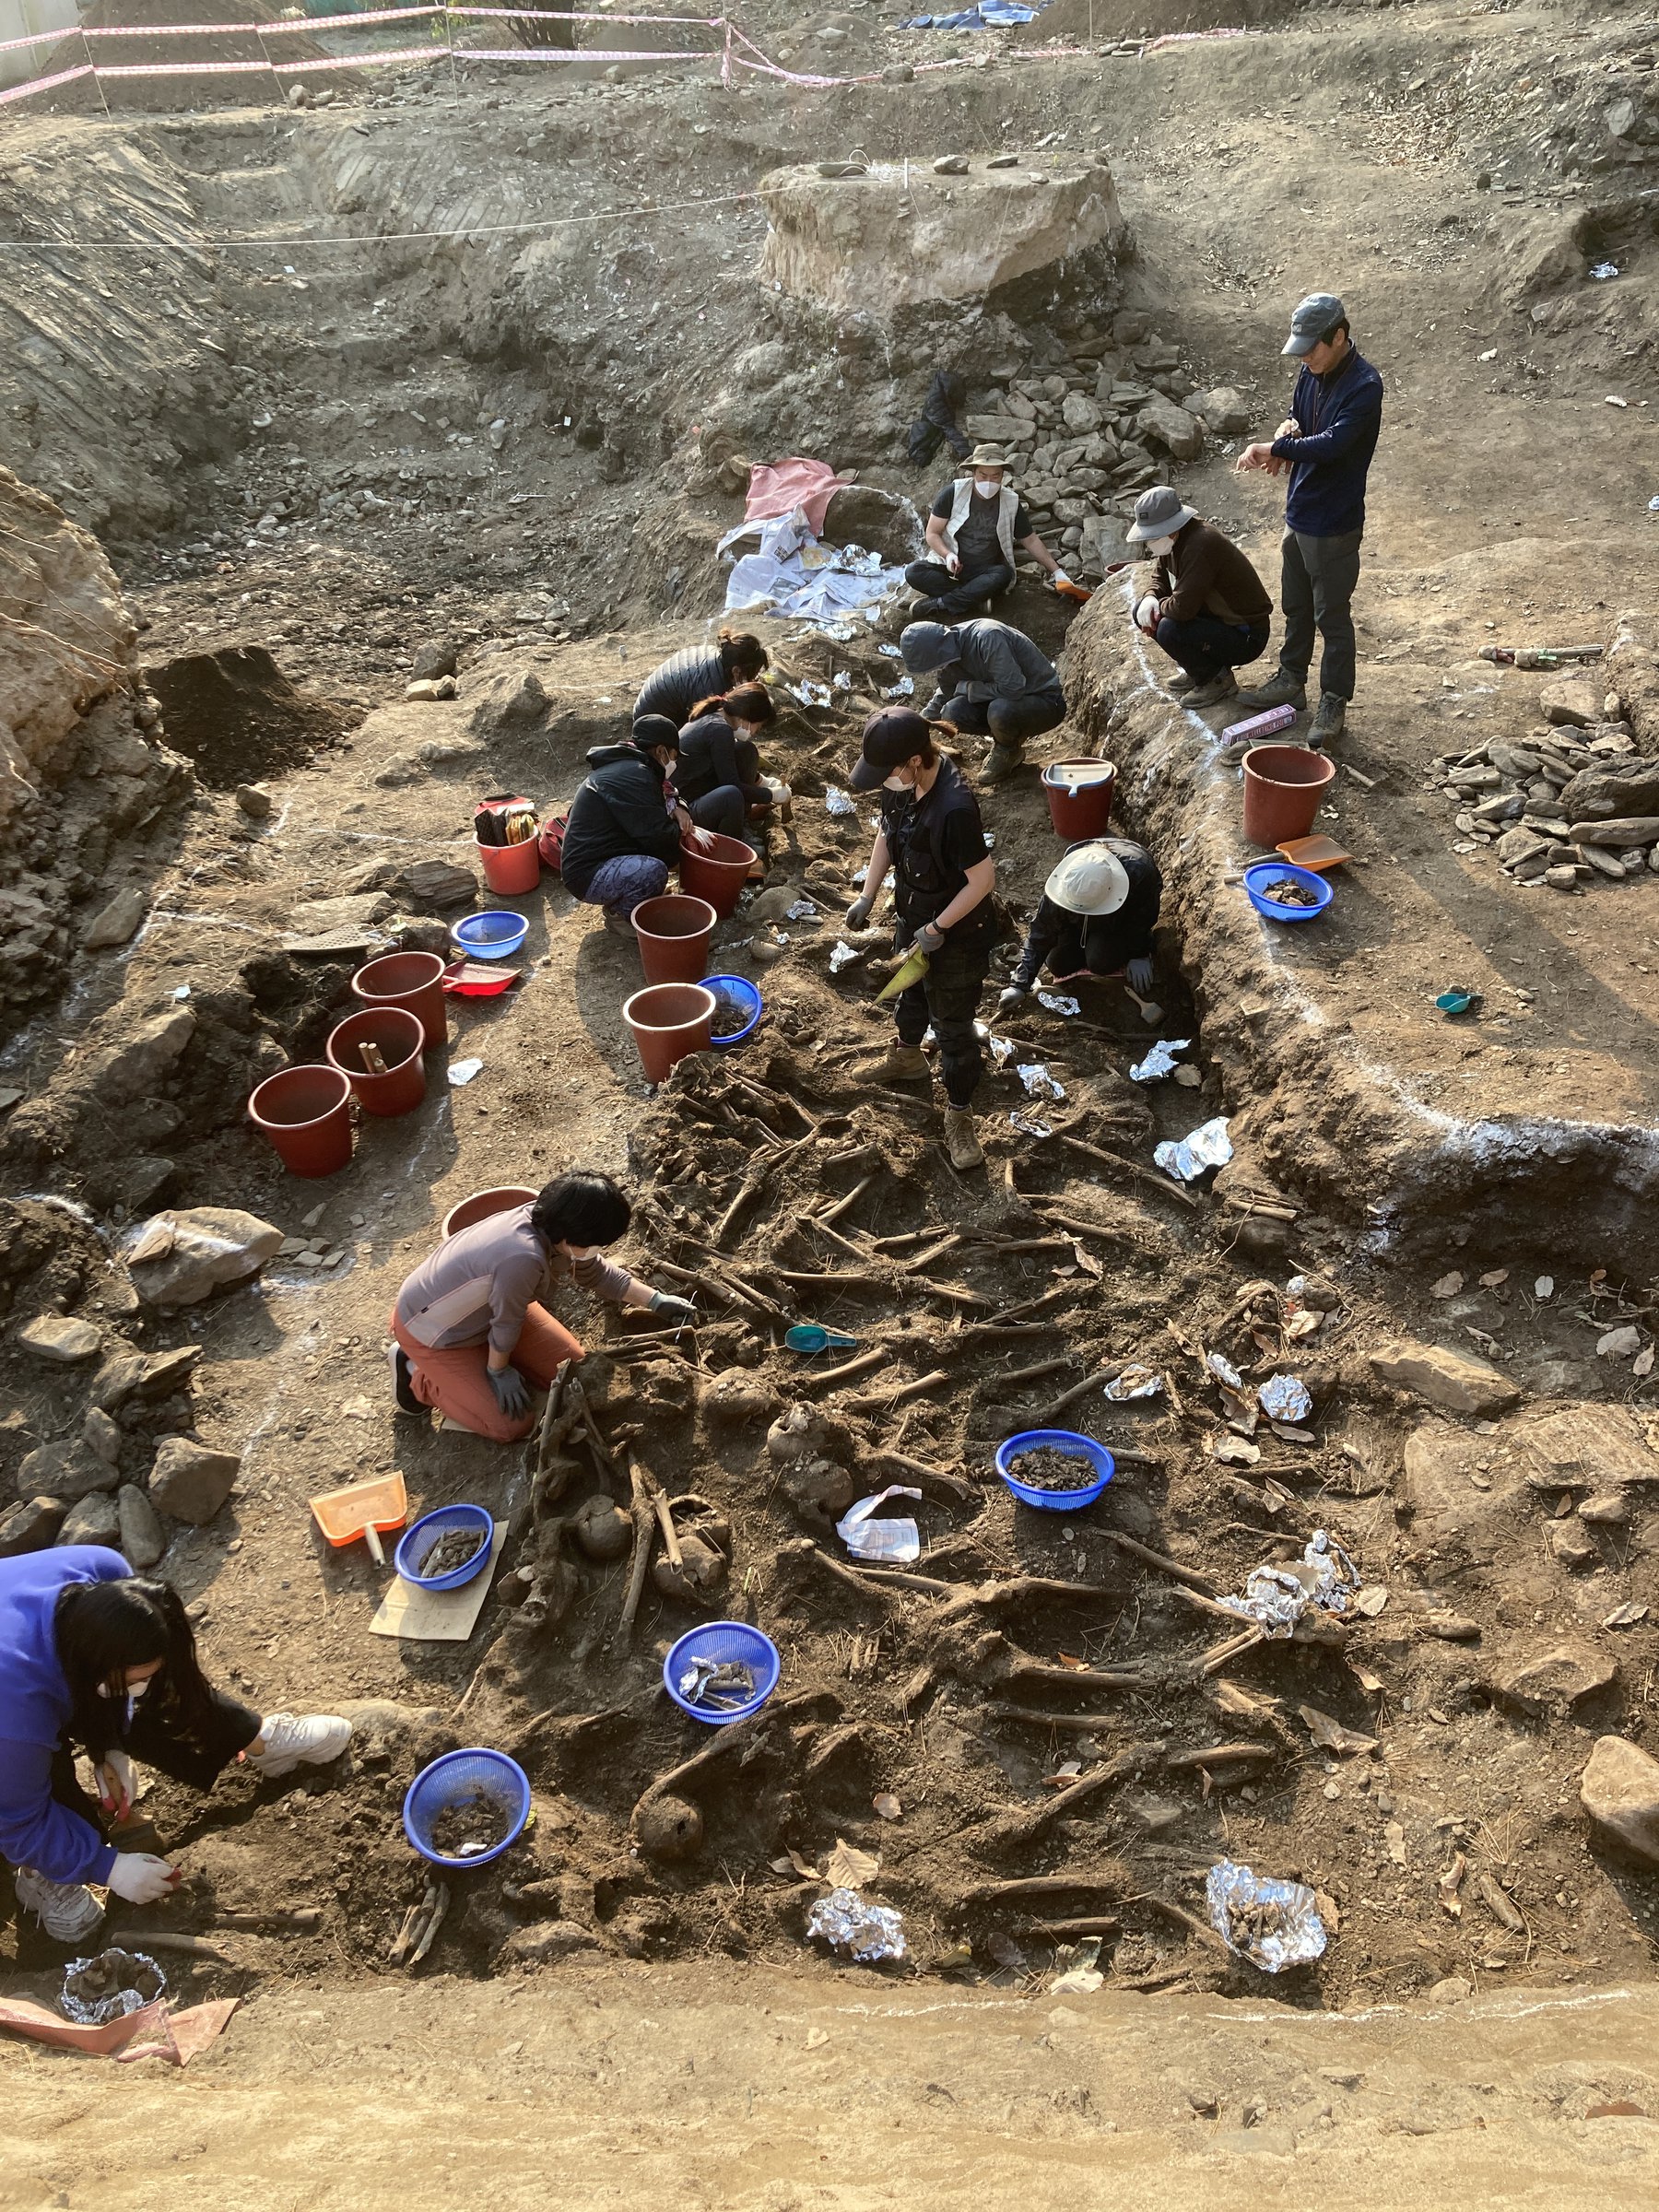 사진은 지난 2020년 11월 대전 골령골 유해발굴 현장 모습. 제주다크투어는 이 당시에도 유해발굴을 지원했습니다.